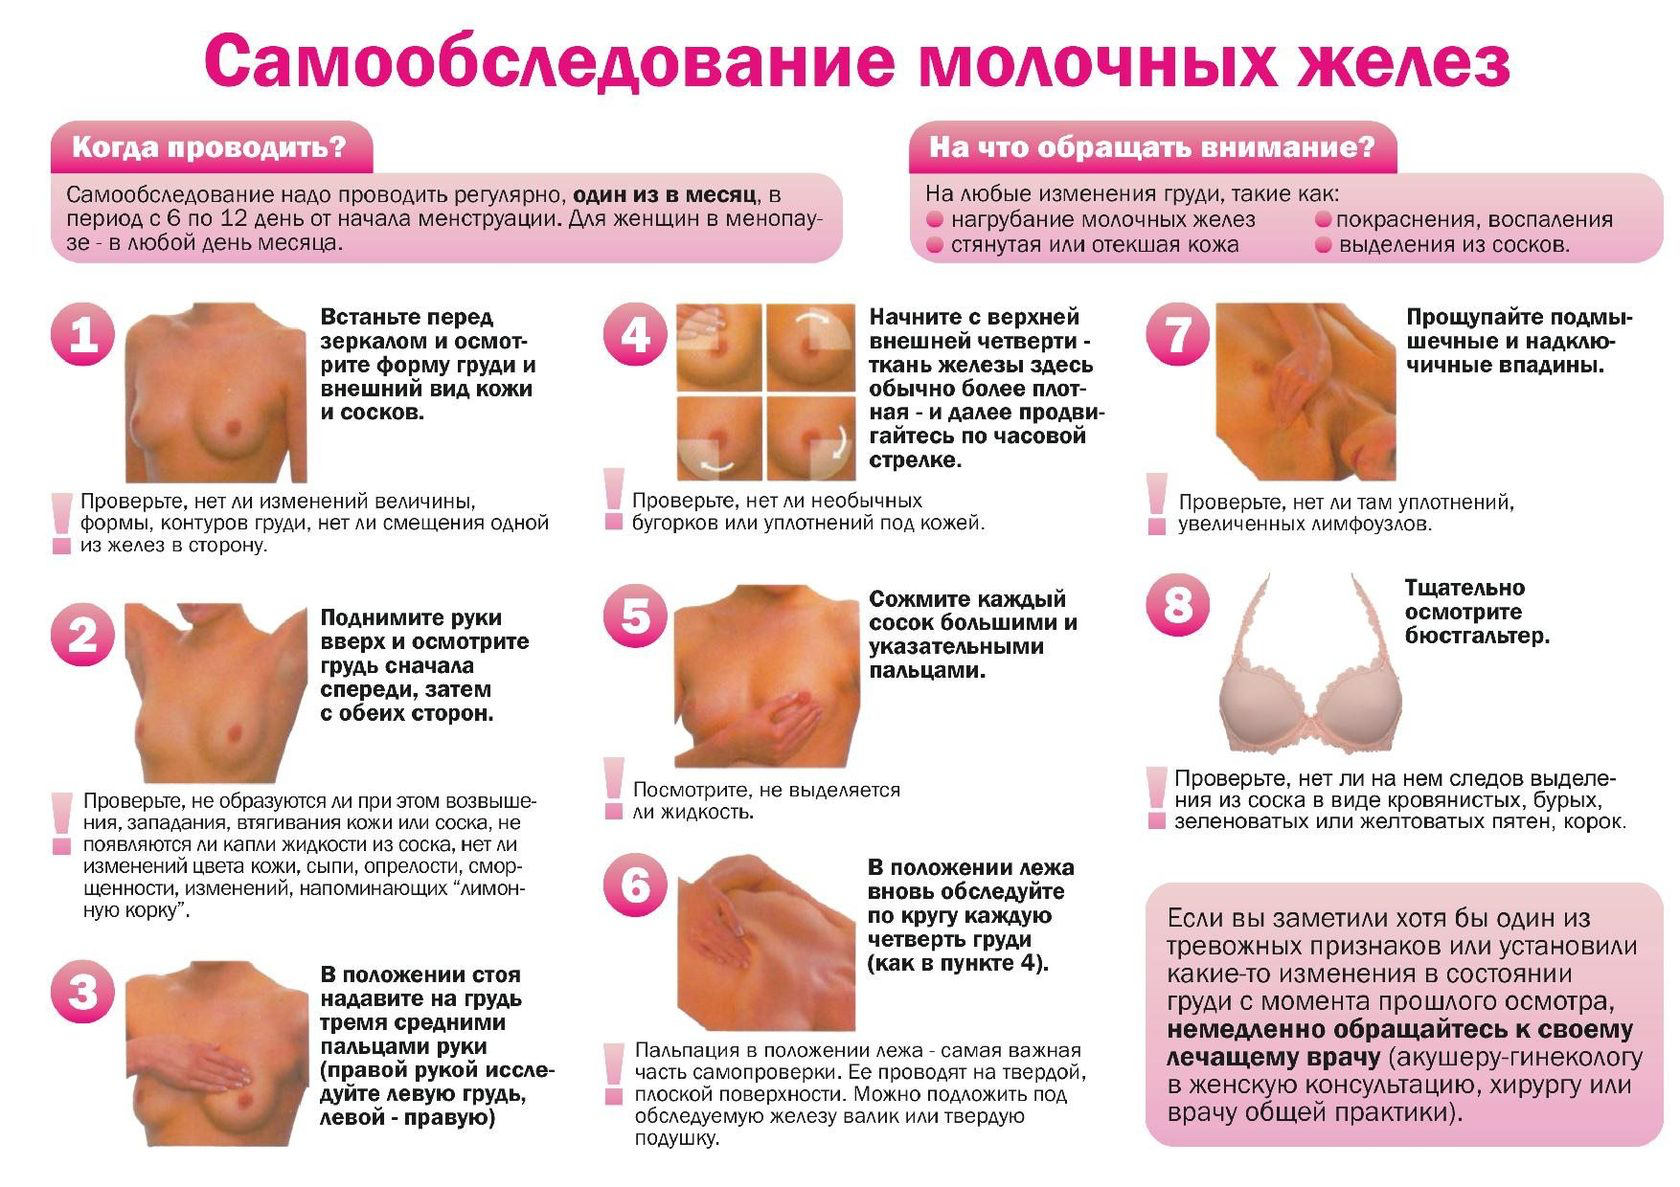 Титьки – ФОТО 12 форм женской груди